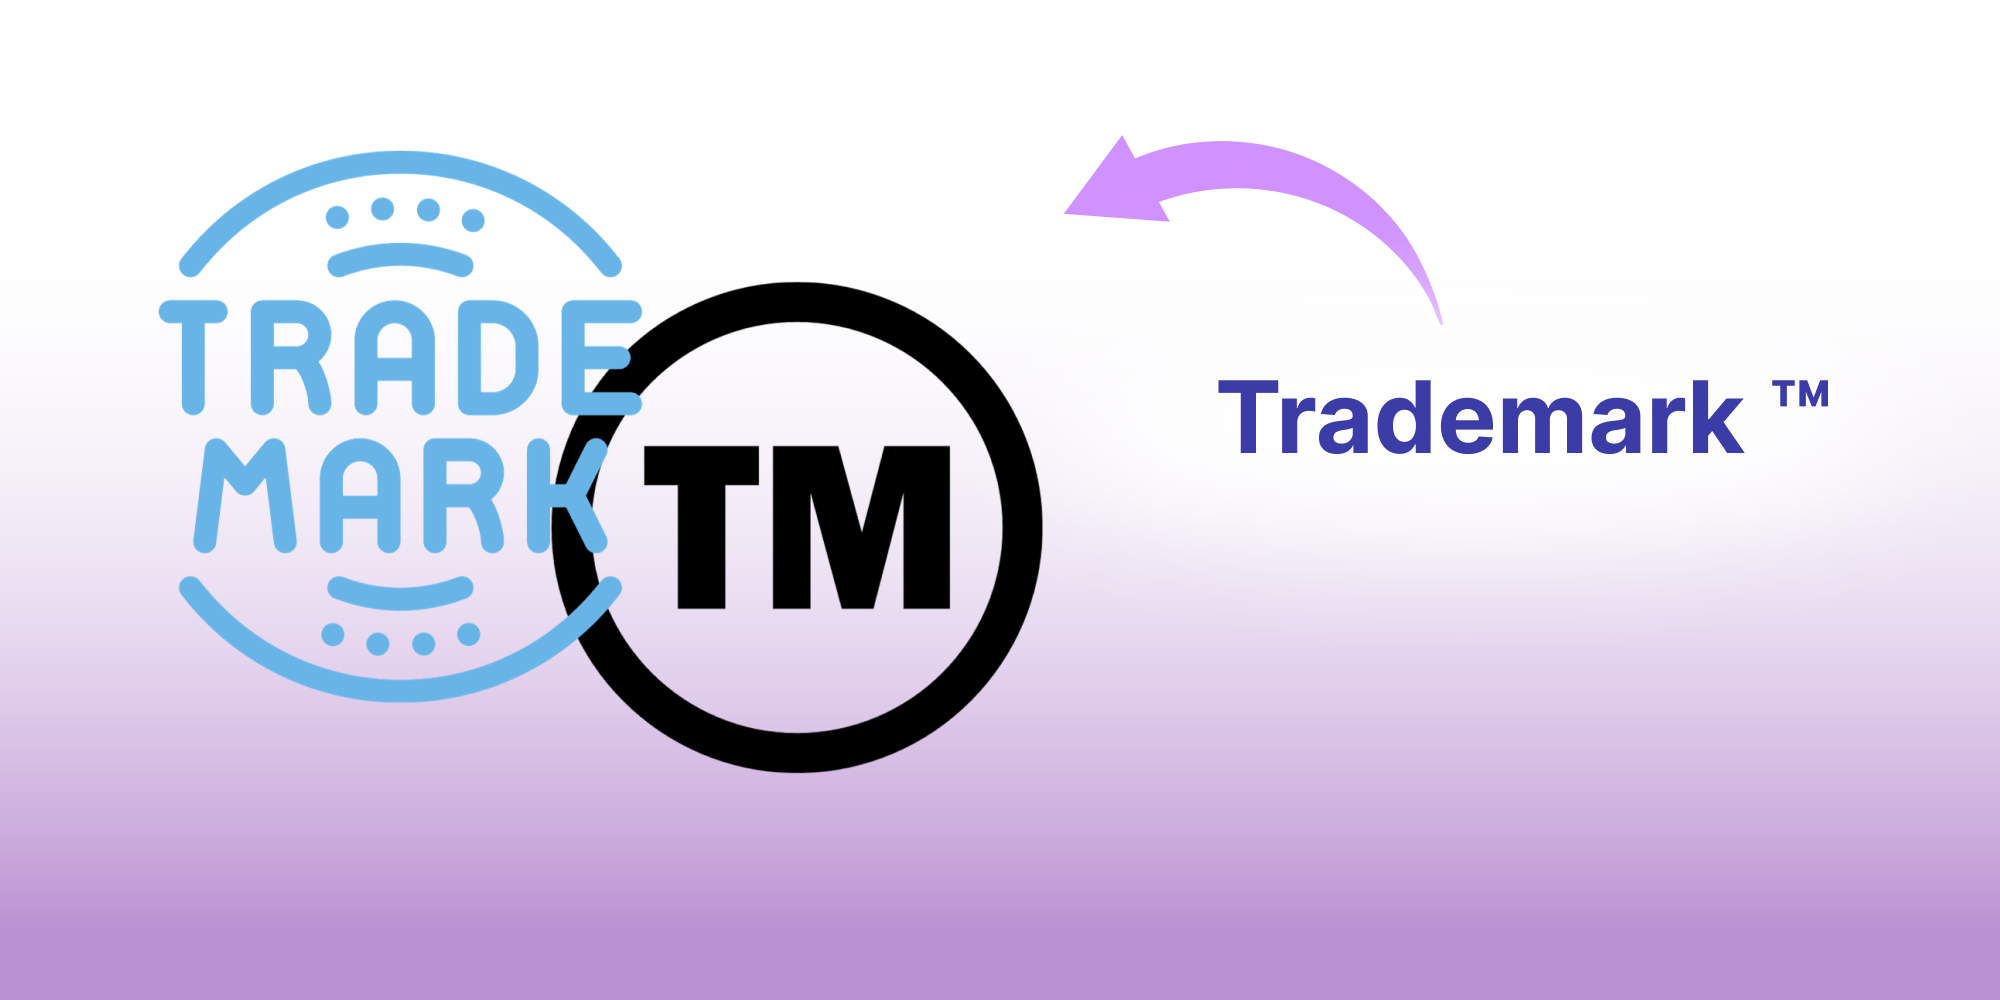 Trademark giúp phân biệt hàng hoá của người bán hoặc nhà sản xuất